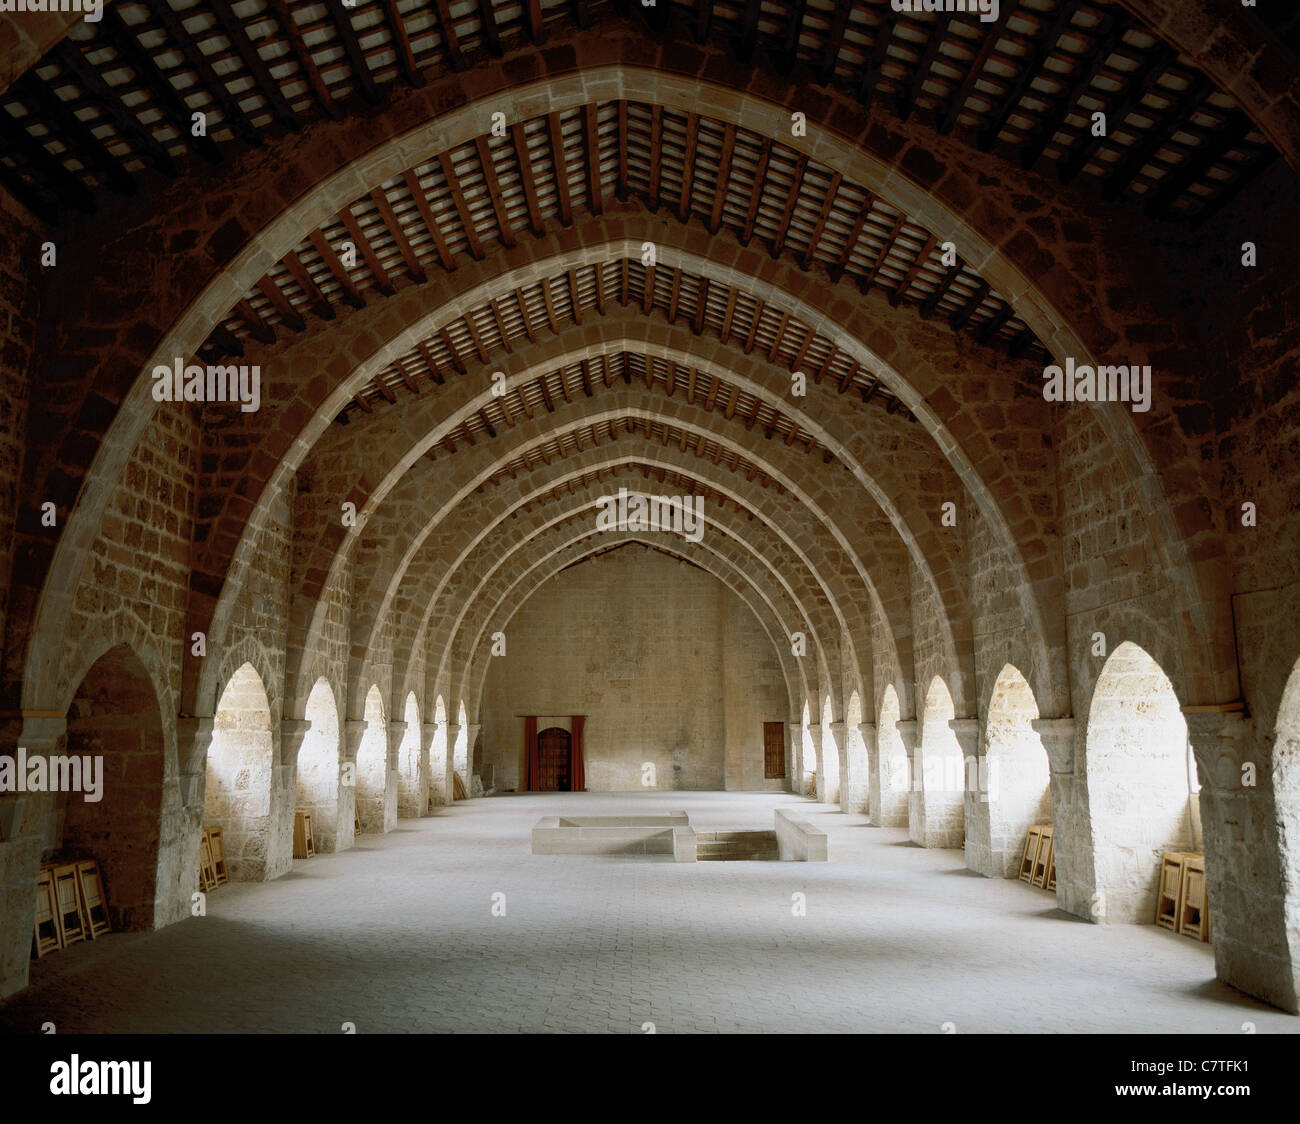 Monasterio de Santes Creus construida entre los siglos XII y XIII. Dormitorio de los monjes. Aiguamurcia. Cataluña. España. Foto de stock